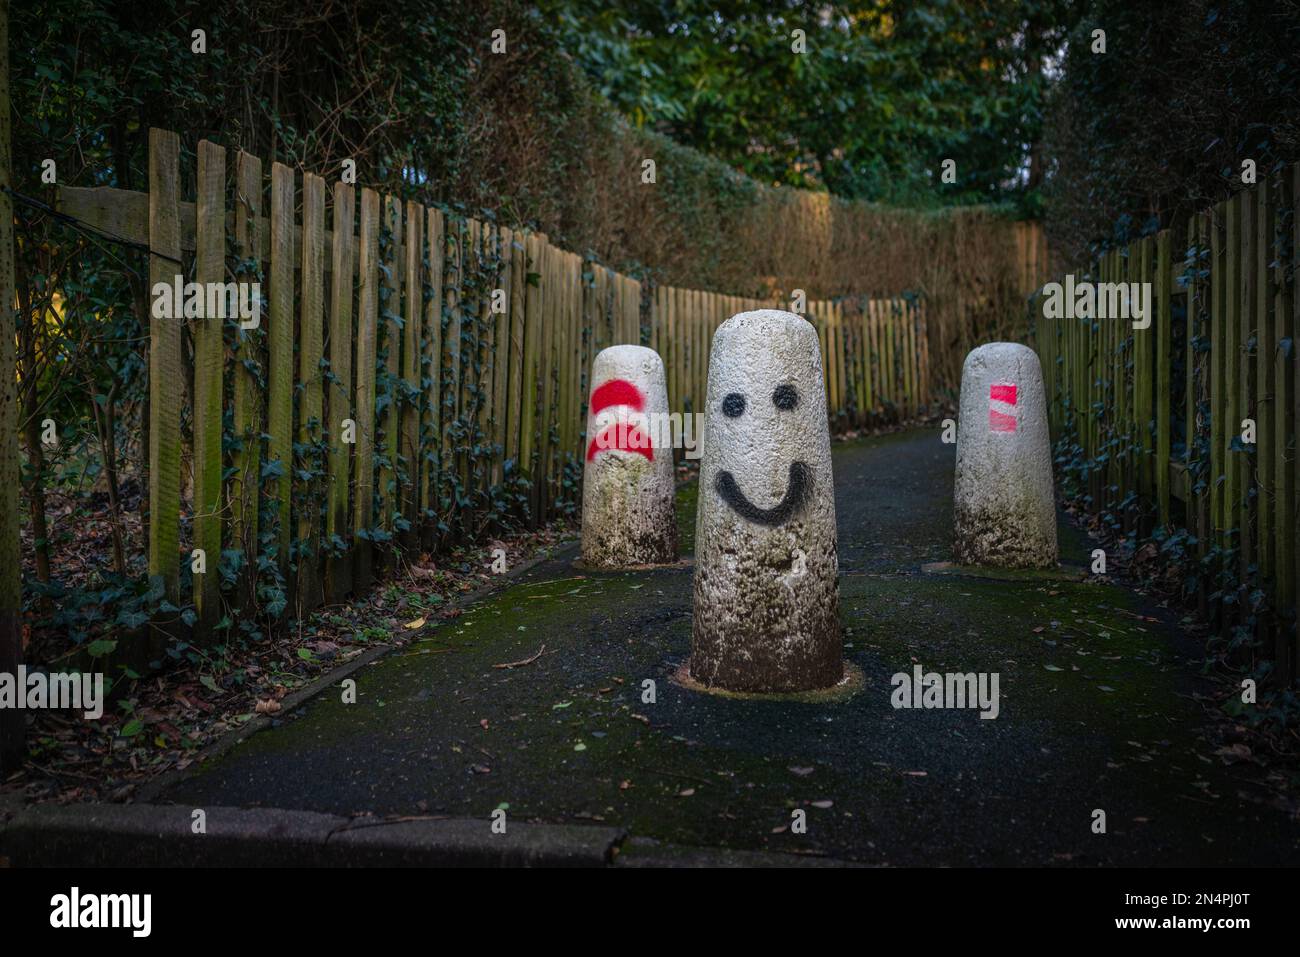 Betonpoller mit lustigen Gesichtern, die darauf gemalt sind, um Fahrzeuge daran zu hindern, einen Fußgängerweg zu betreten, England, Großbritannien Stockfoto